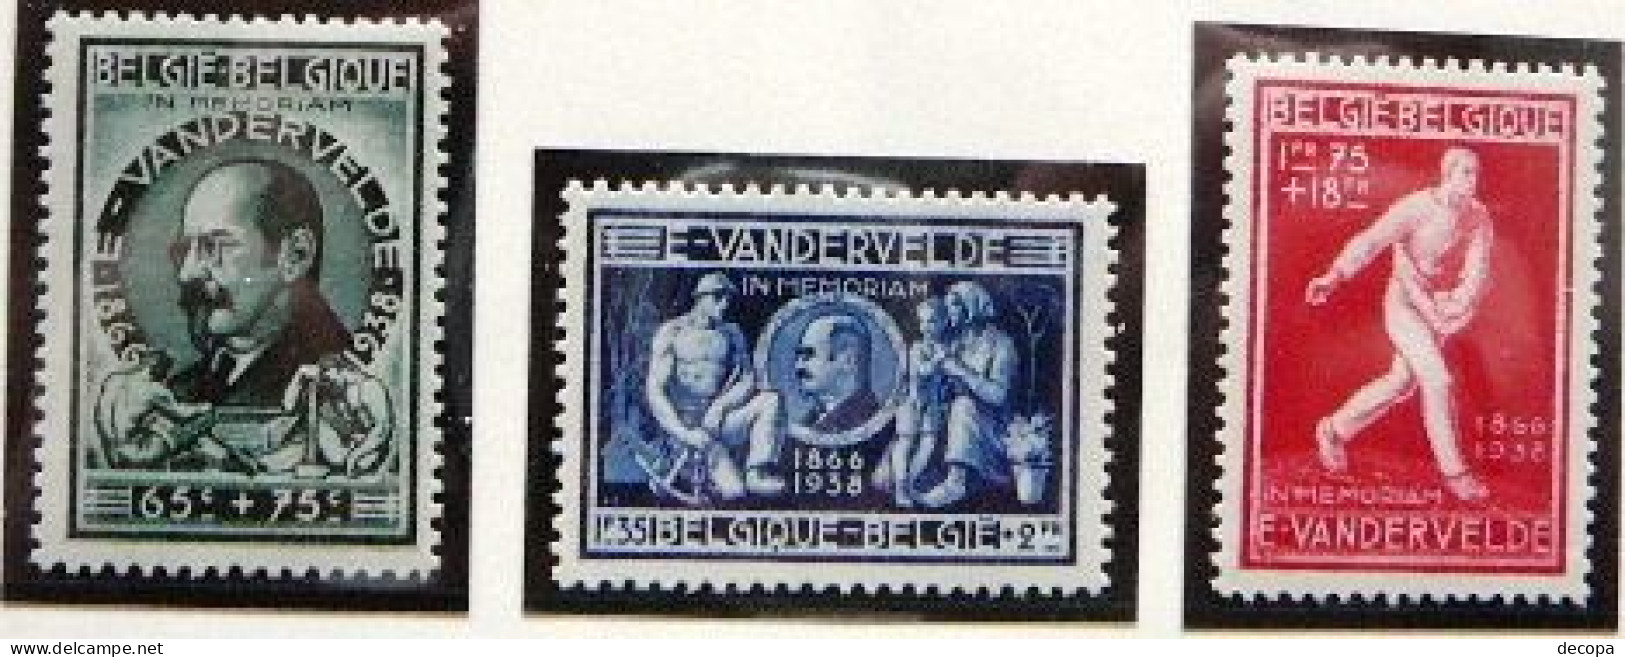 (dcbpf-323) Emile Vandervelde   OBP  731-33    1946   MNH - Unused Stamps